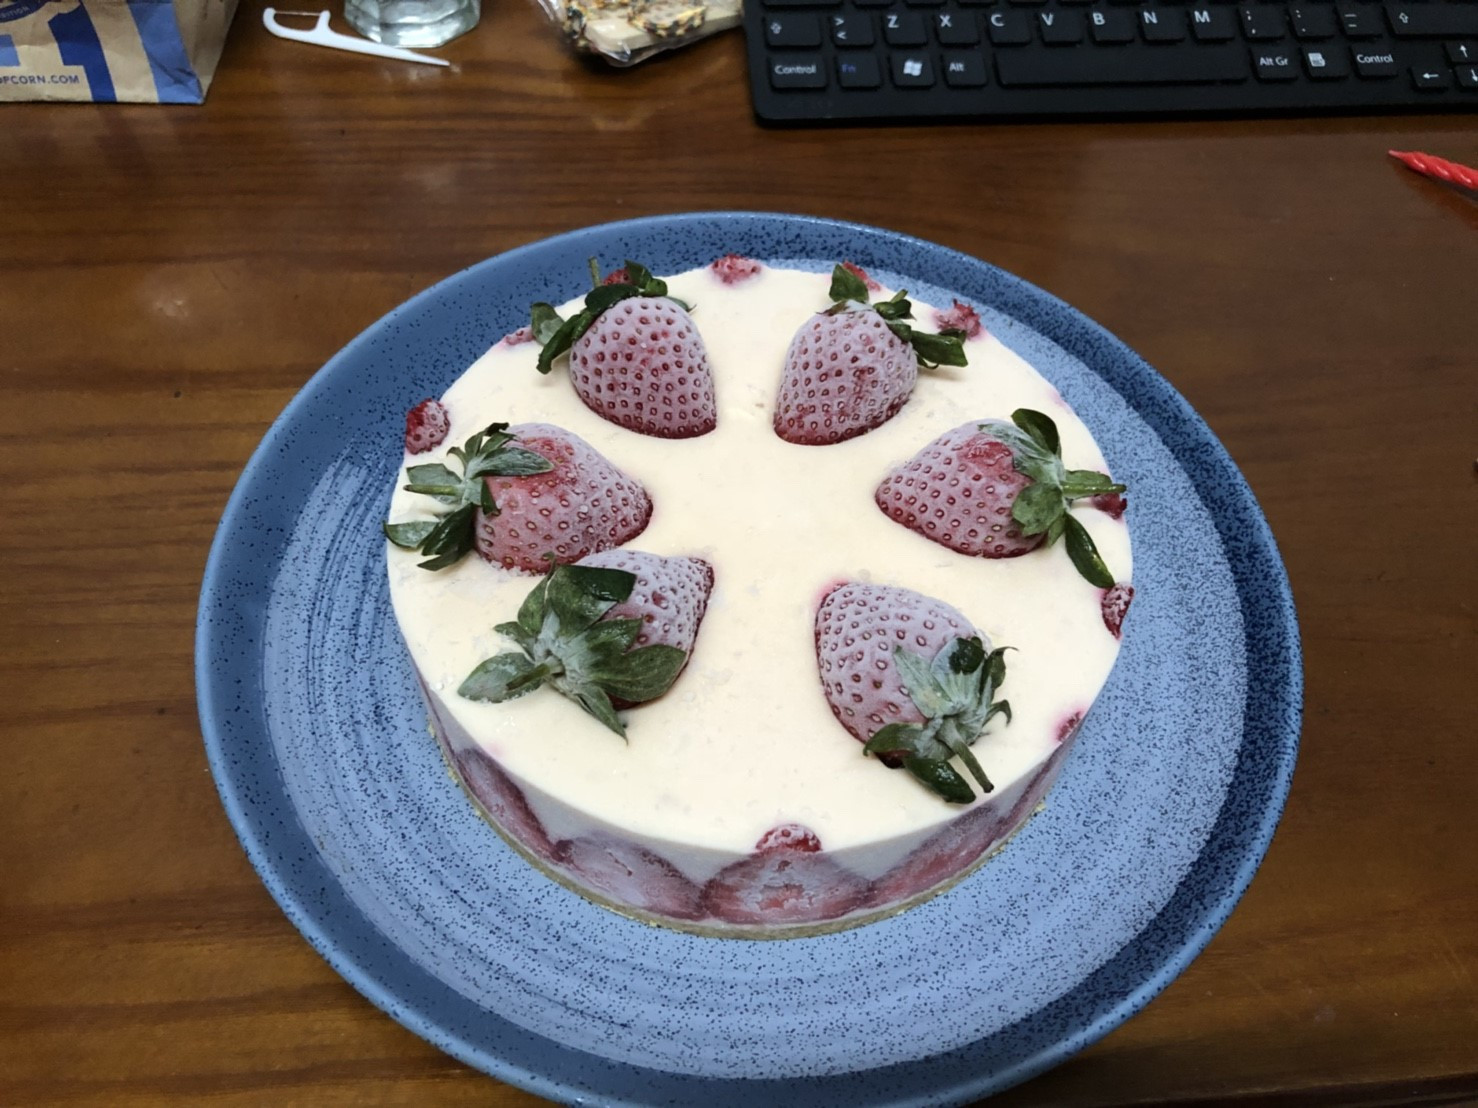 草莓乳酪蛋糕